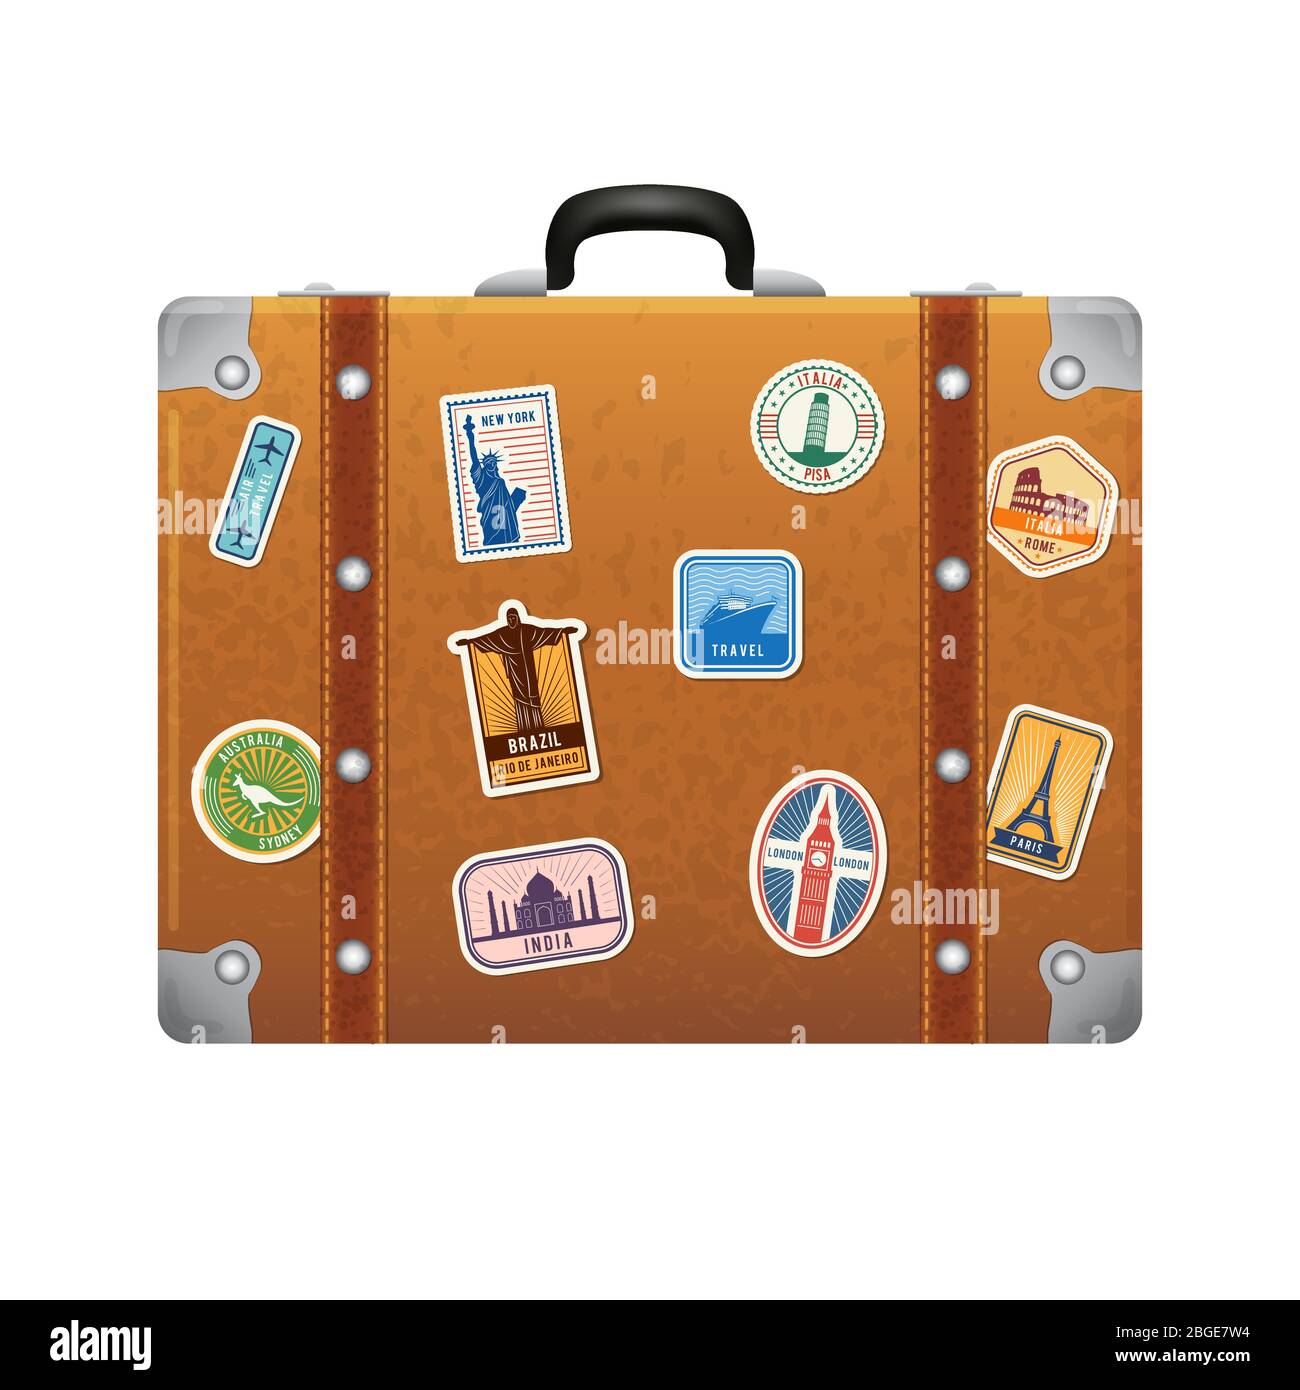 Sticker valise - Billets - Gadgets et Cadeaux Originaux